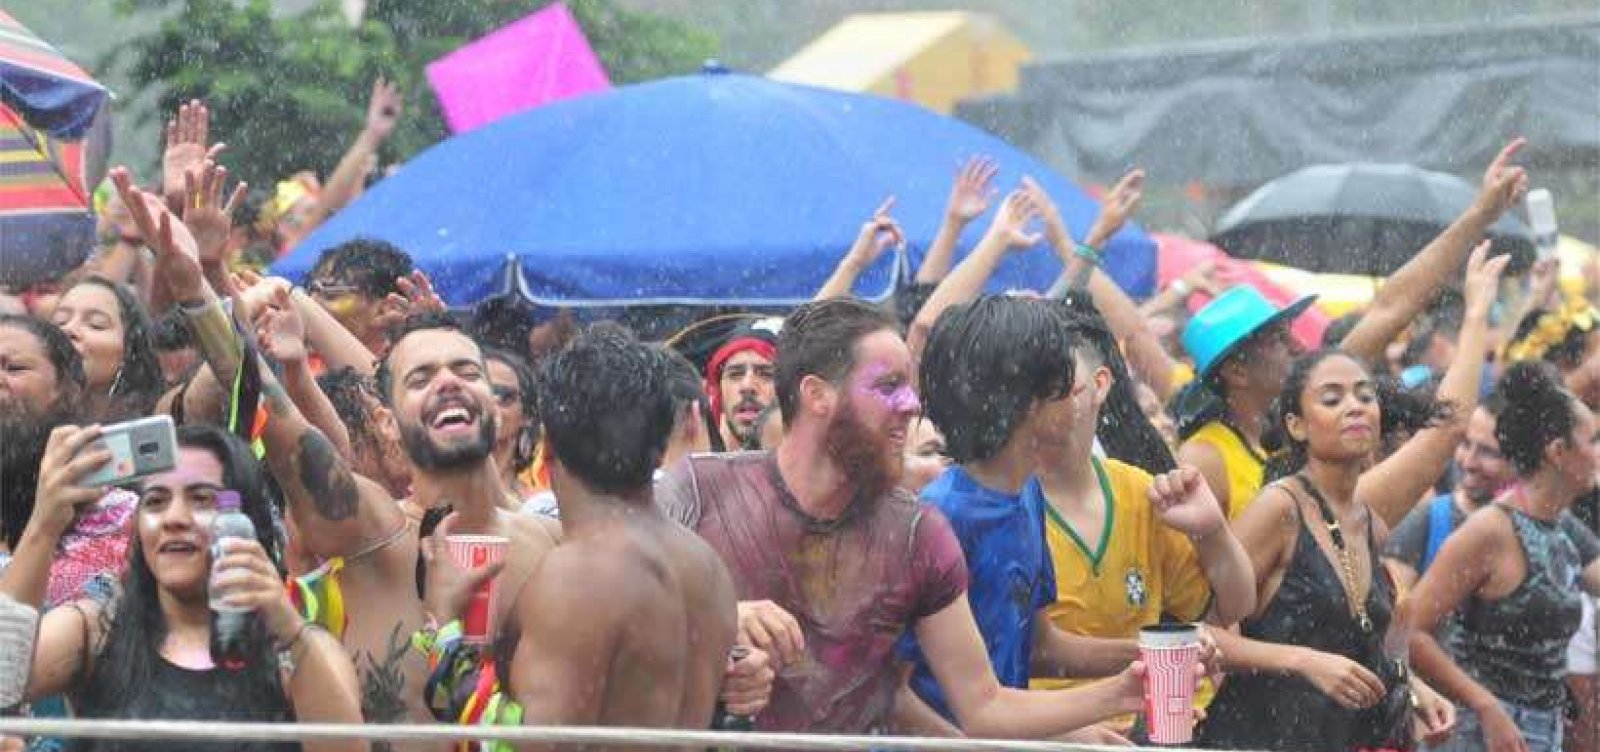 Alerta aos foliões: primeiros dias de Carnaval em Salvador serão de calorão e chuvas moderadas